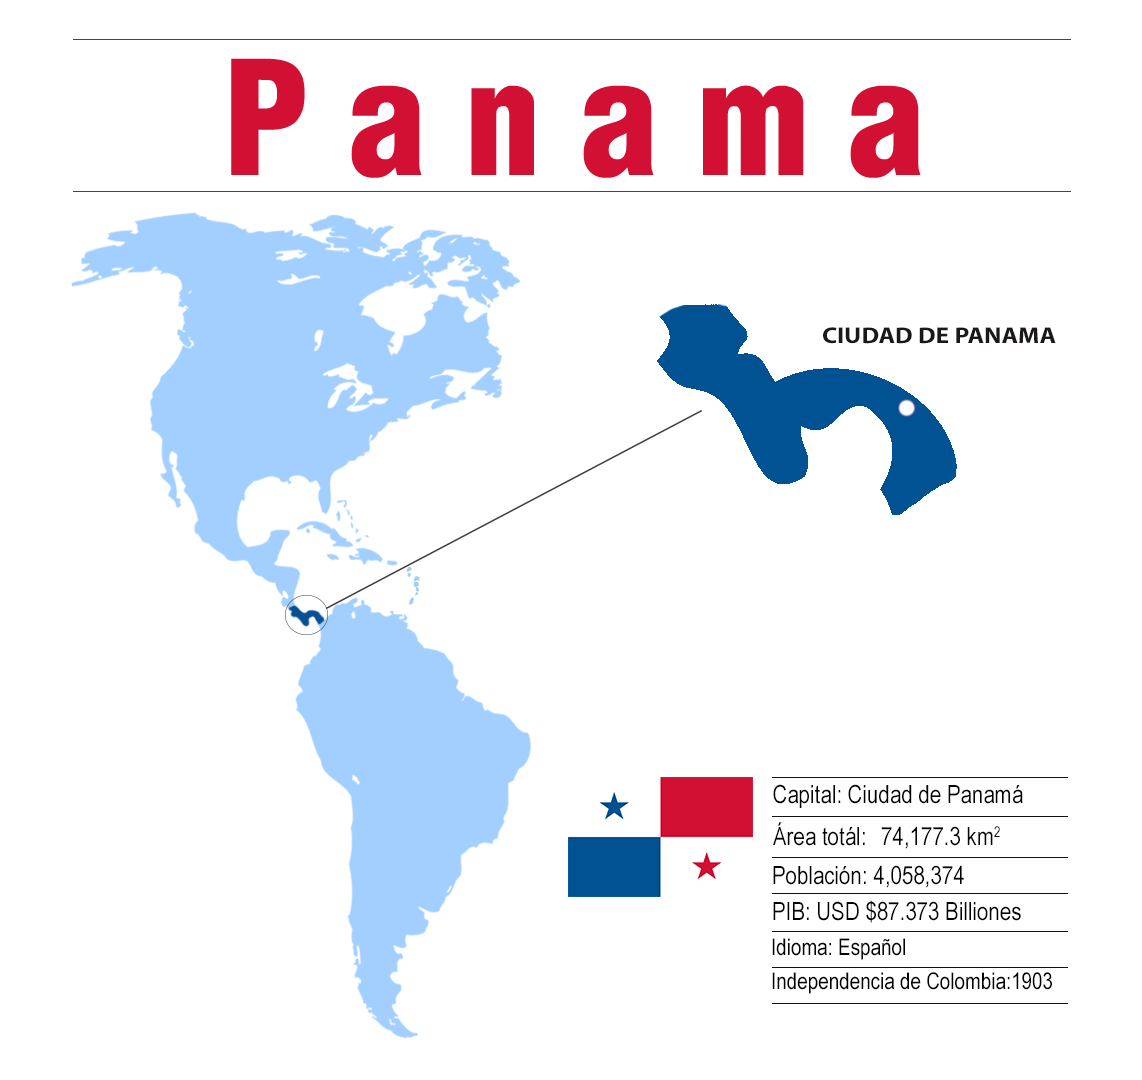 ¿Cómo se puede obtener un pasaporte de Panamá?